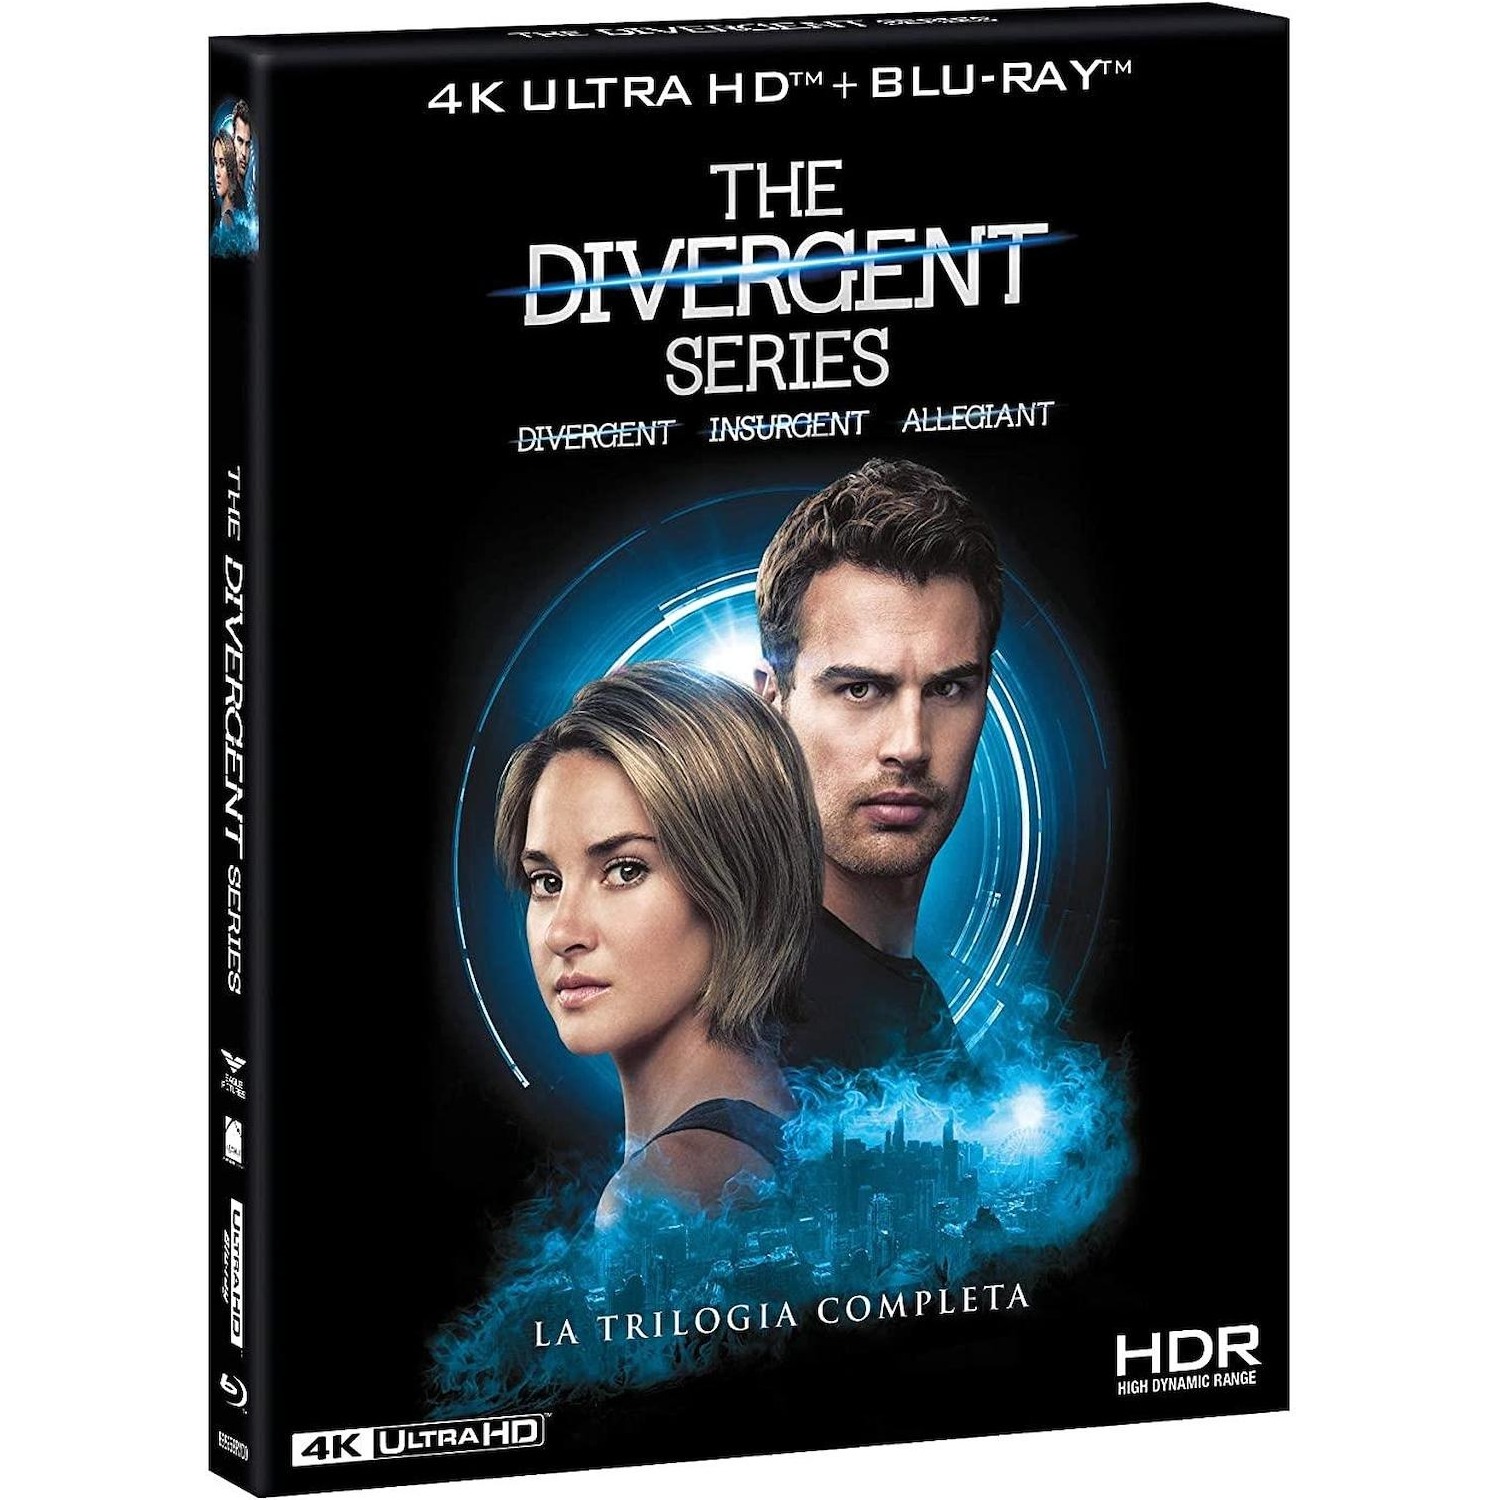 Immagine per Cofanetto Bluray 4K Divergent Series Trilogia da DIMOStore